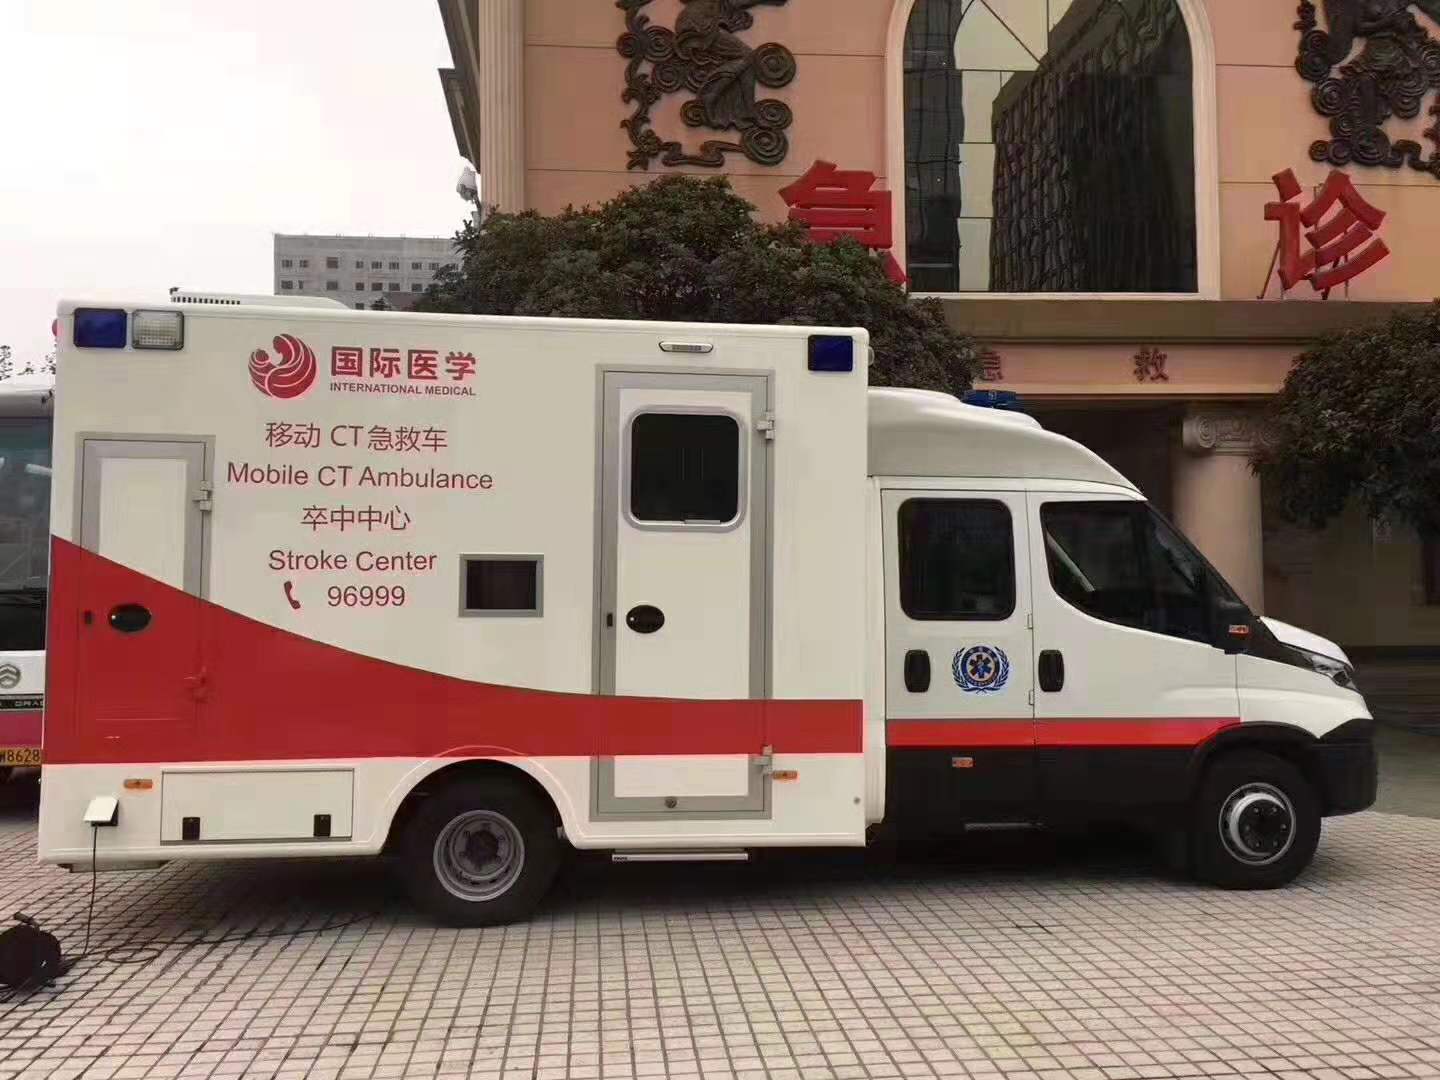 西北首台脑卒中急救CT车落户西安国际医学中心